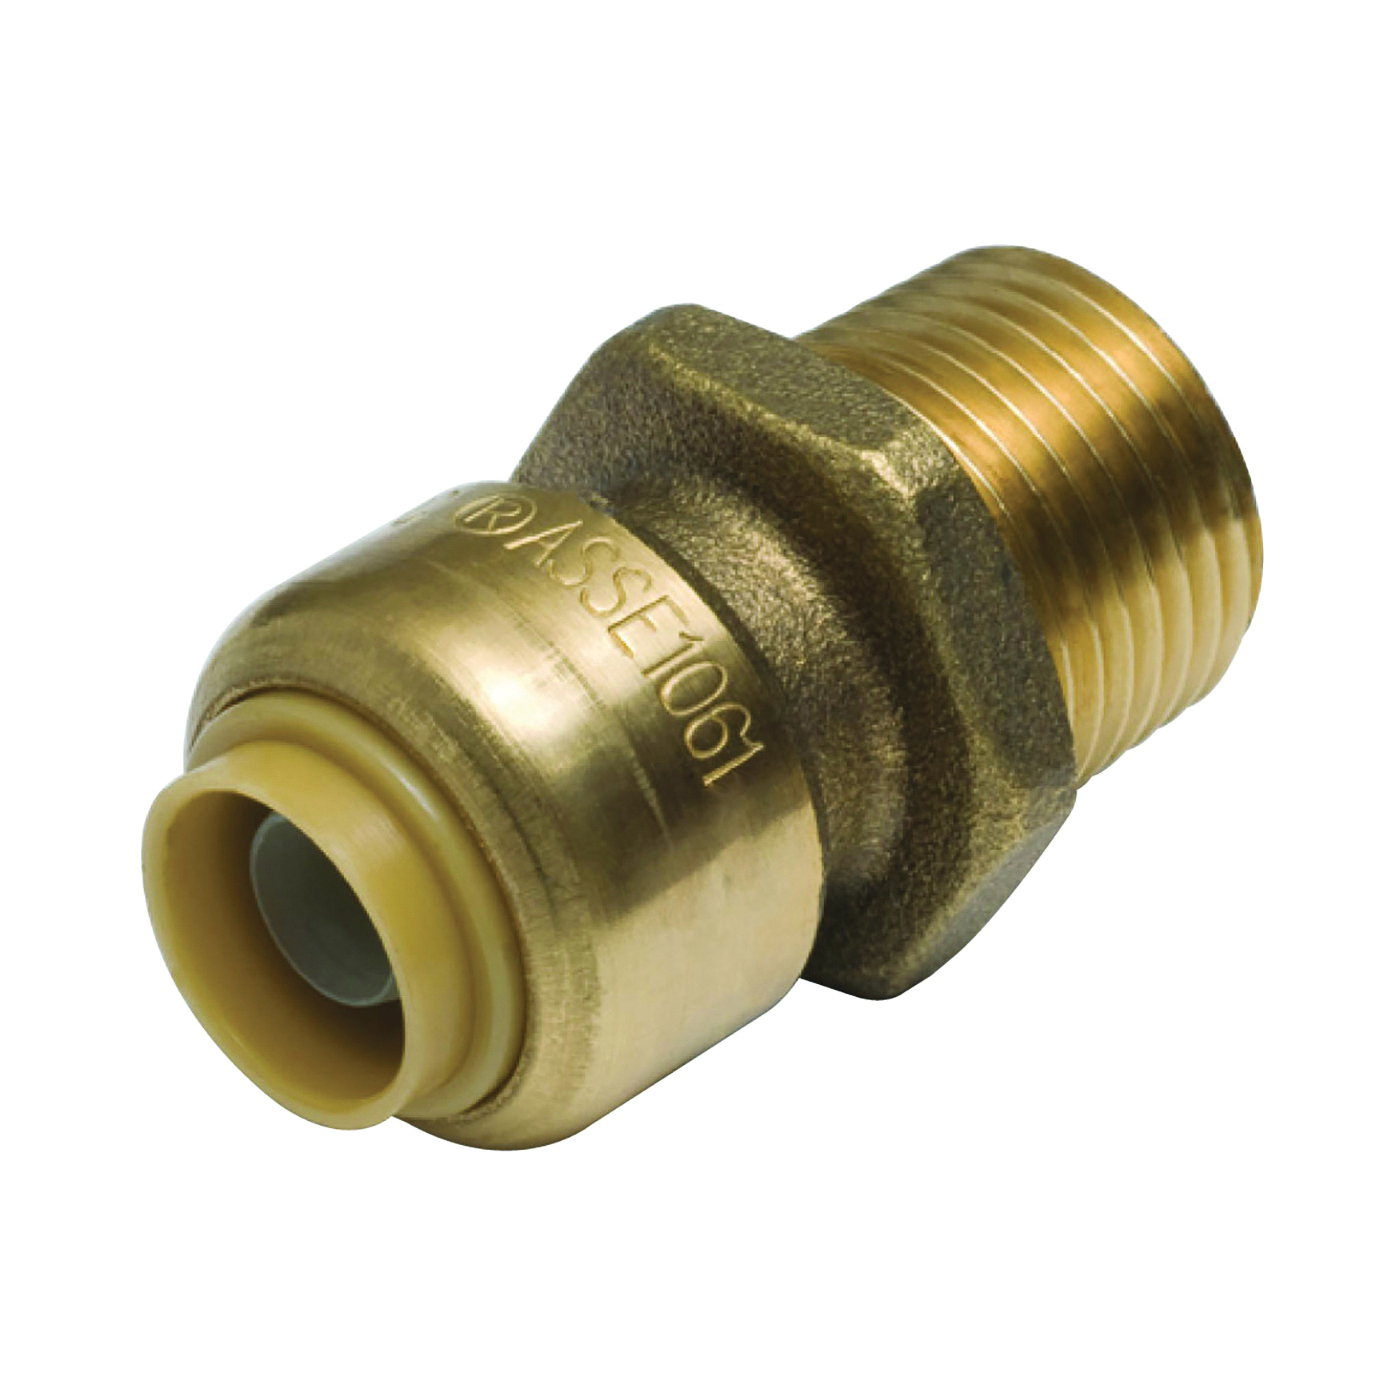 U116LFA Pipe Connector, 1/2 x 3/4 in, MNPT, Brass, 200 psi Pressure